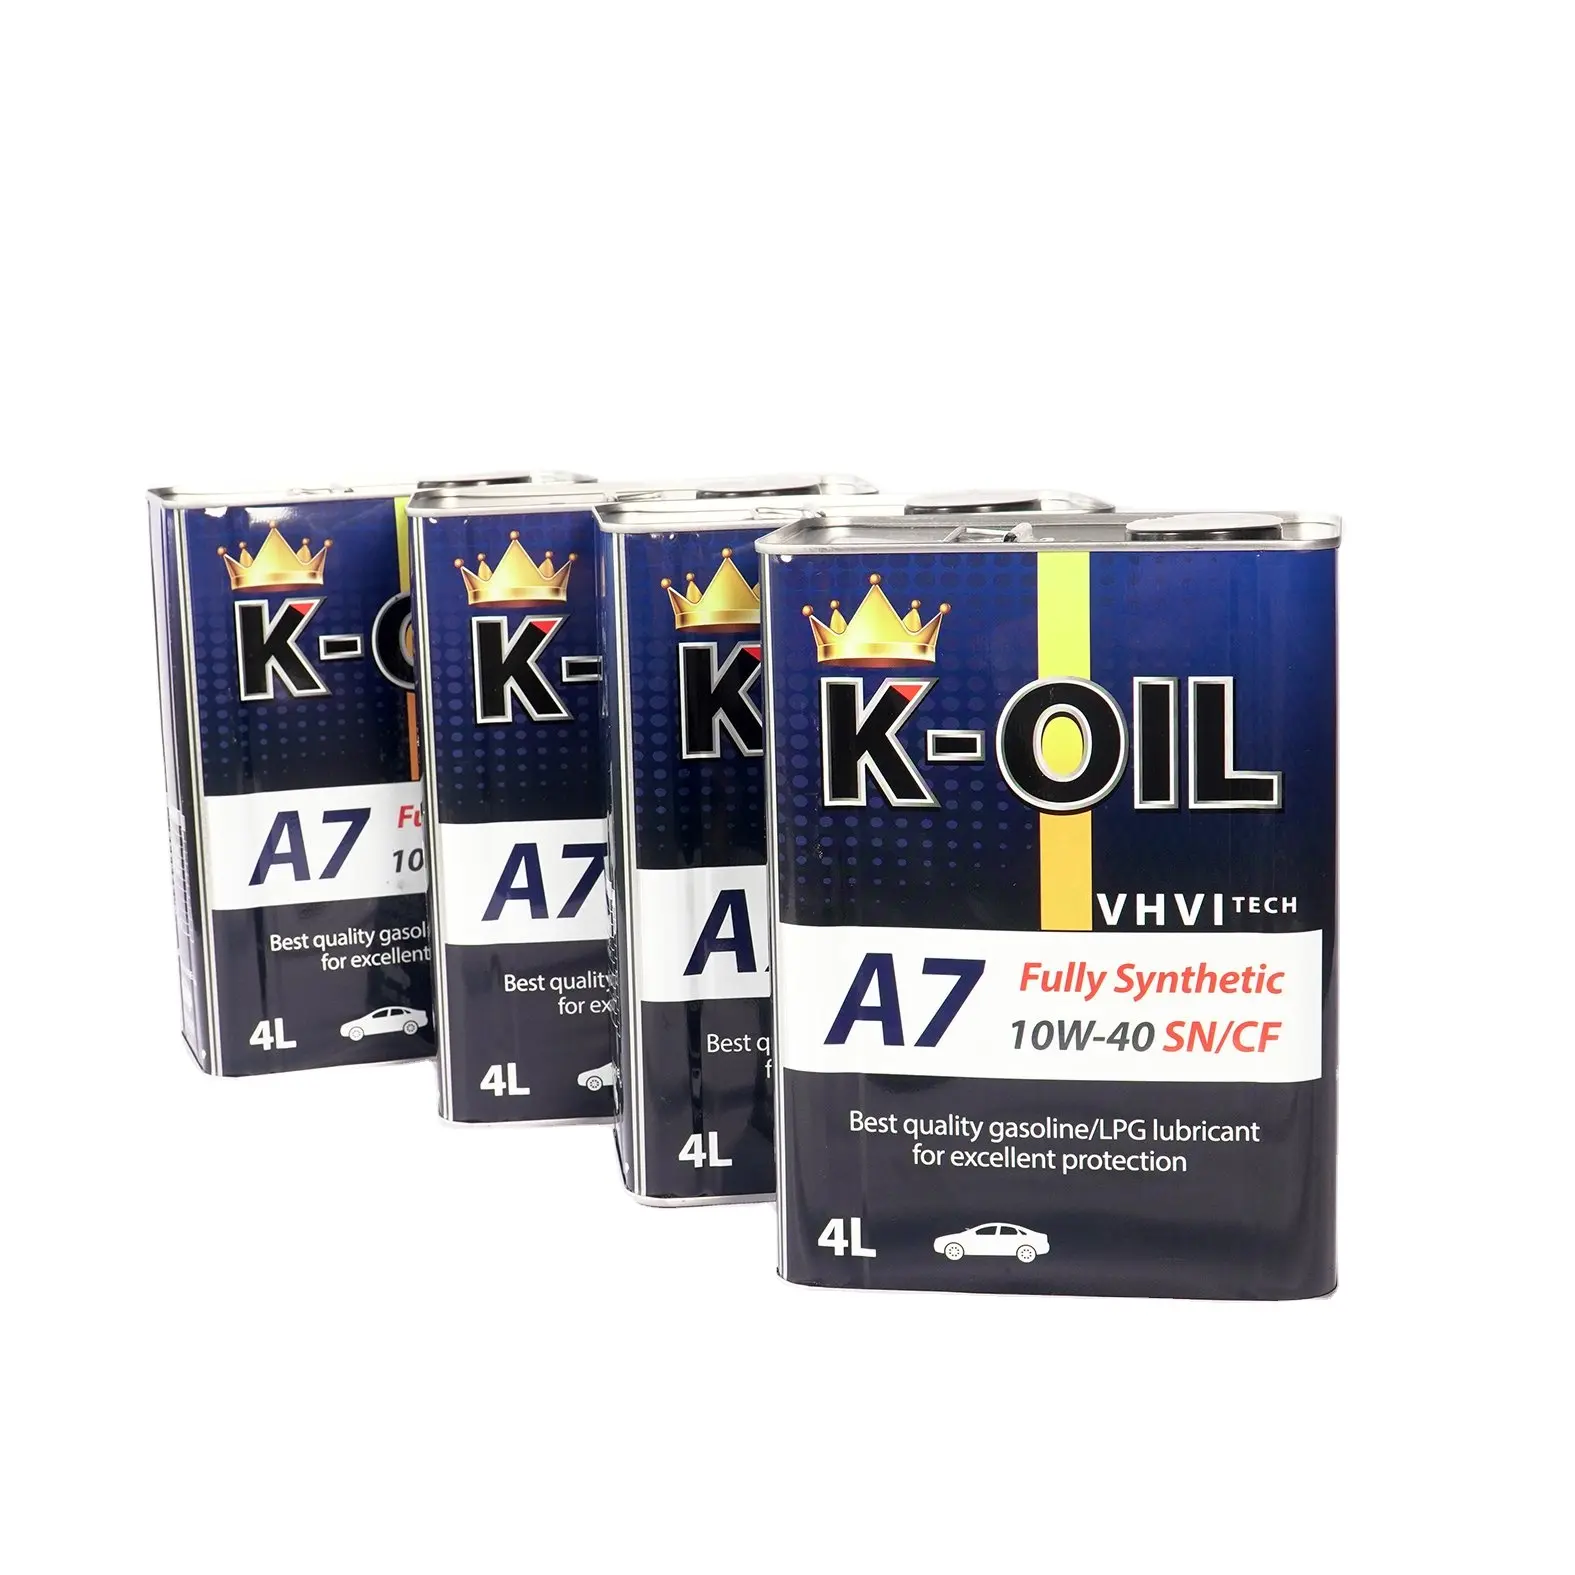 K-Oil A7 10W40 SN/CF, aceite lubricante que soporta altas temperaturas y uso al por mayor para motor de gasolina, del fabricante de Vietnam